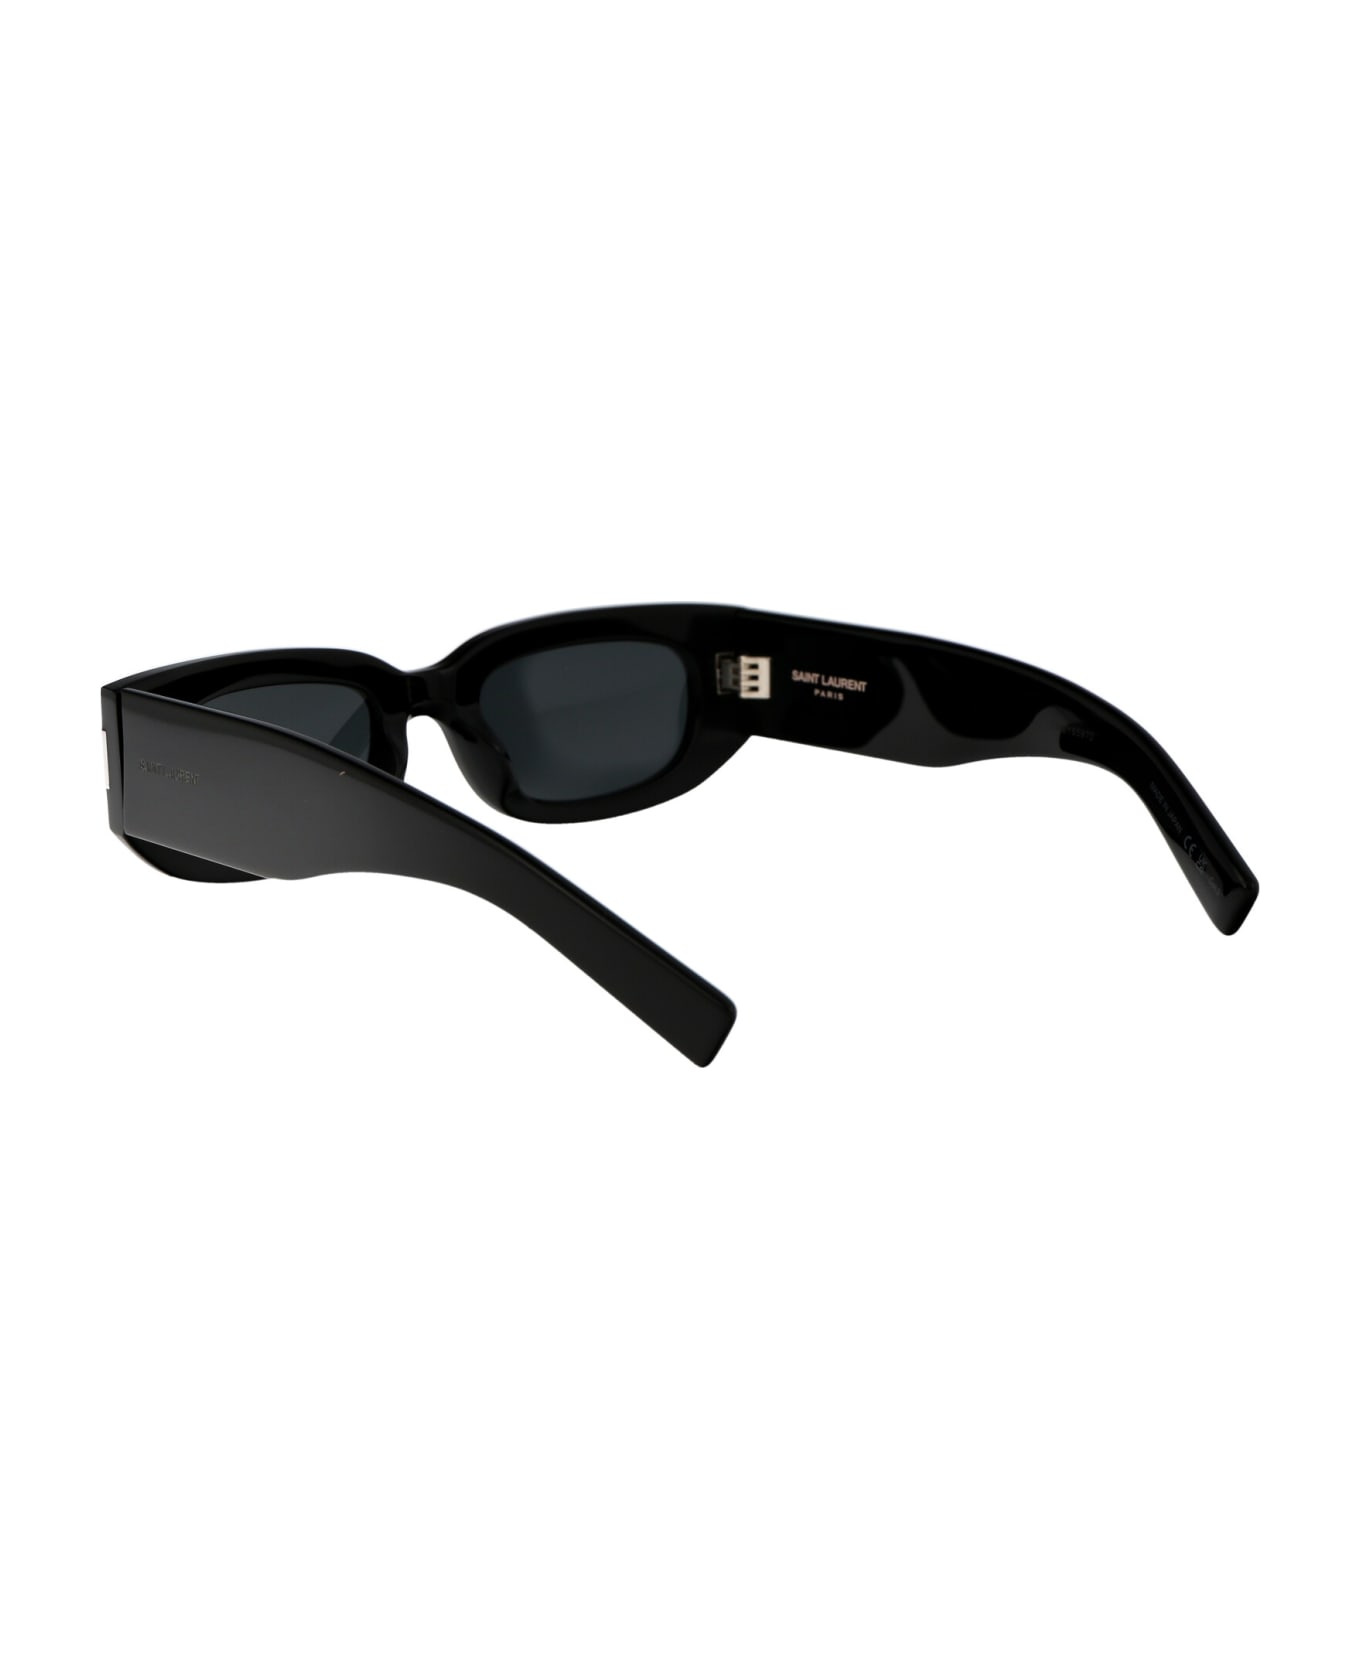 Saint Laurent Eyewear Sl 697 Sunglasses - 001 BLACK BLACK BLACK サングラス